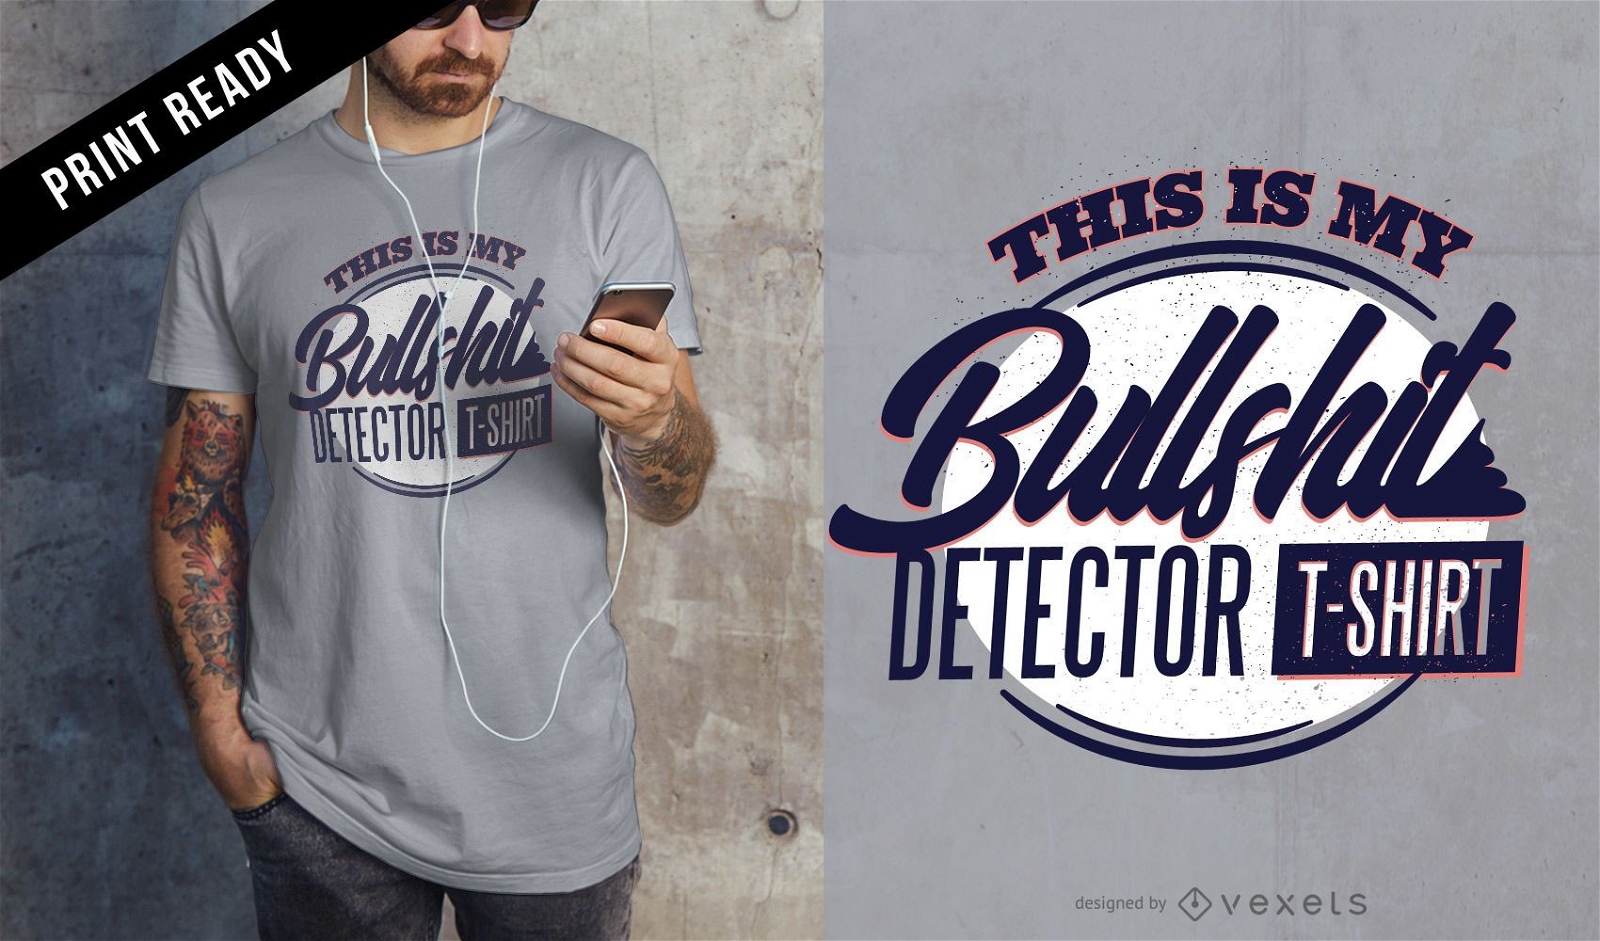 Bullshit detector t-shirt design